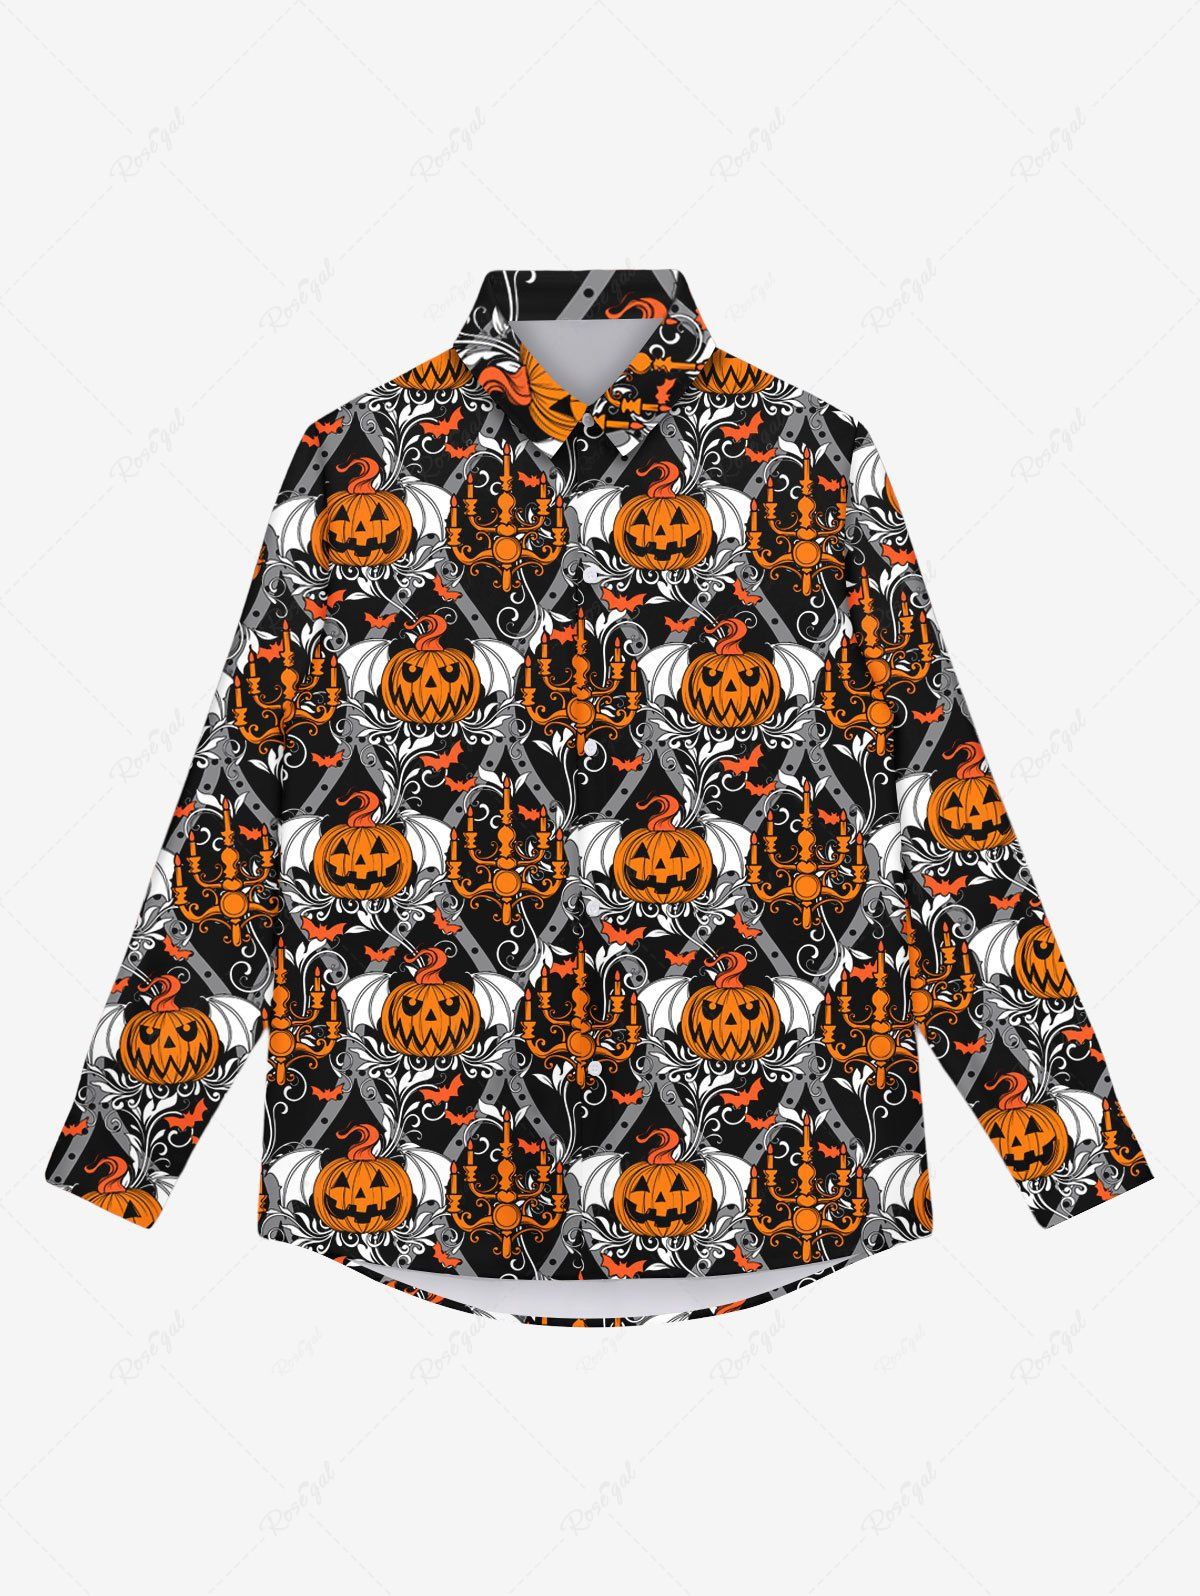 Hot Gothic Pumpkin Bat Candle Print Halloween Buttons Shirt For Men  